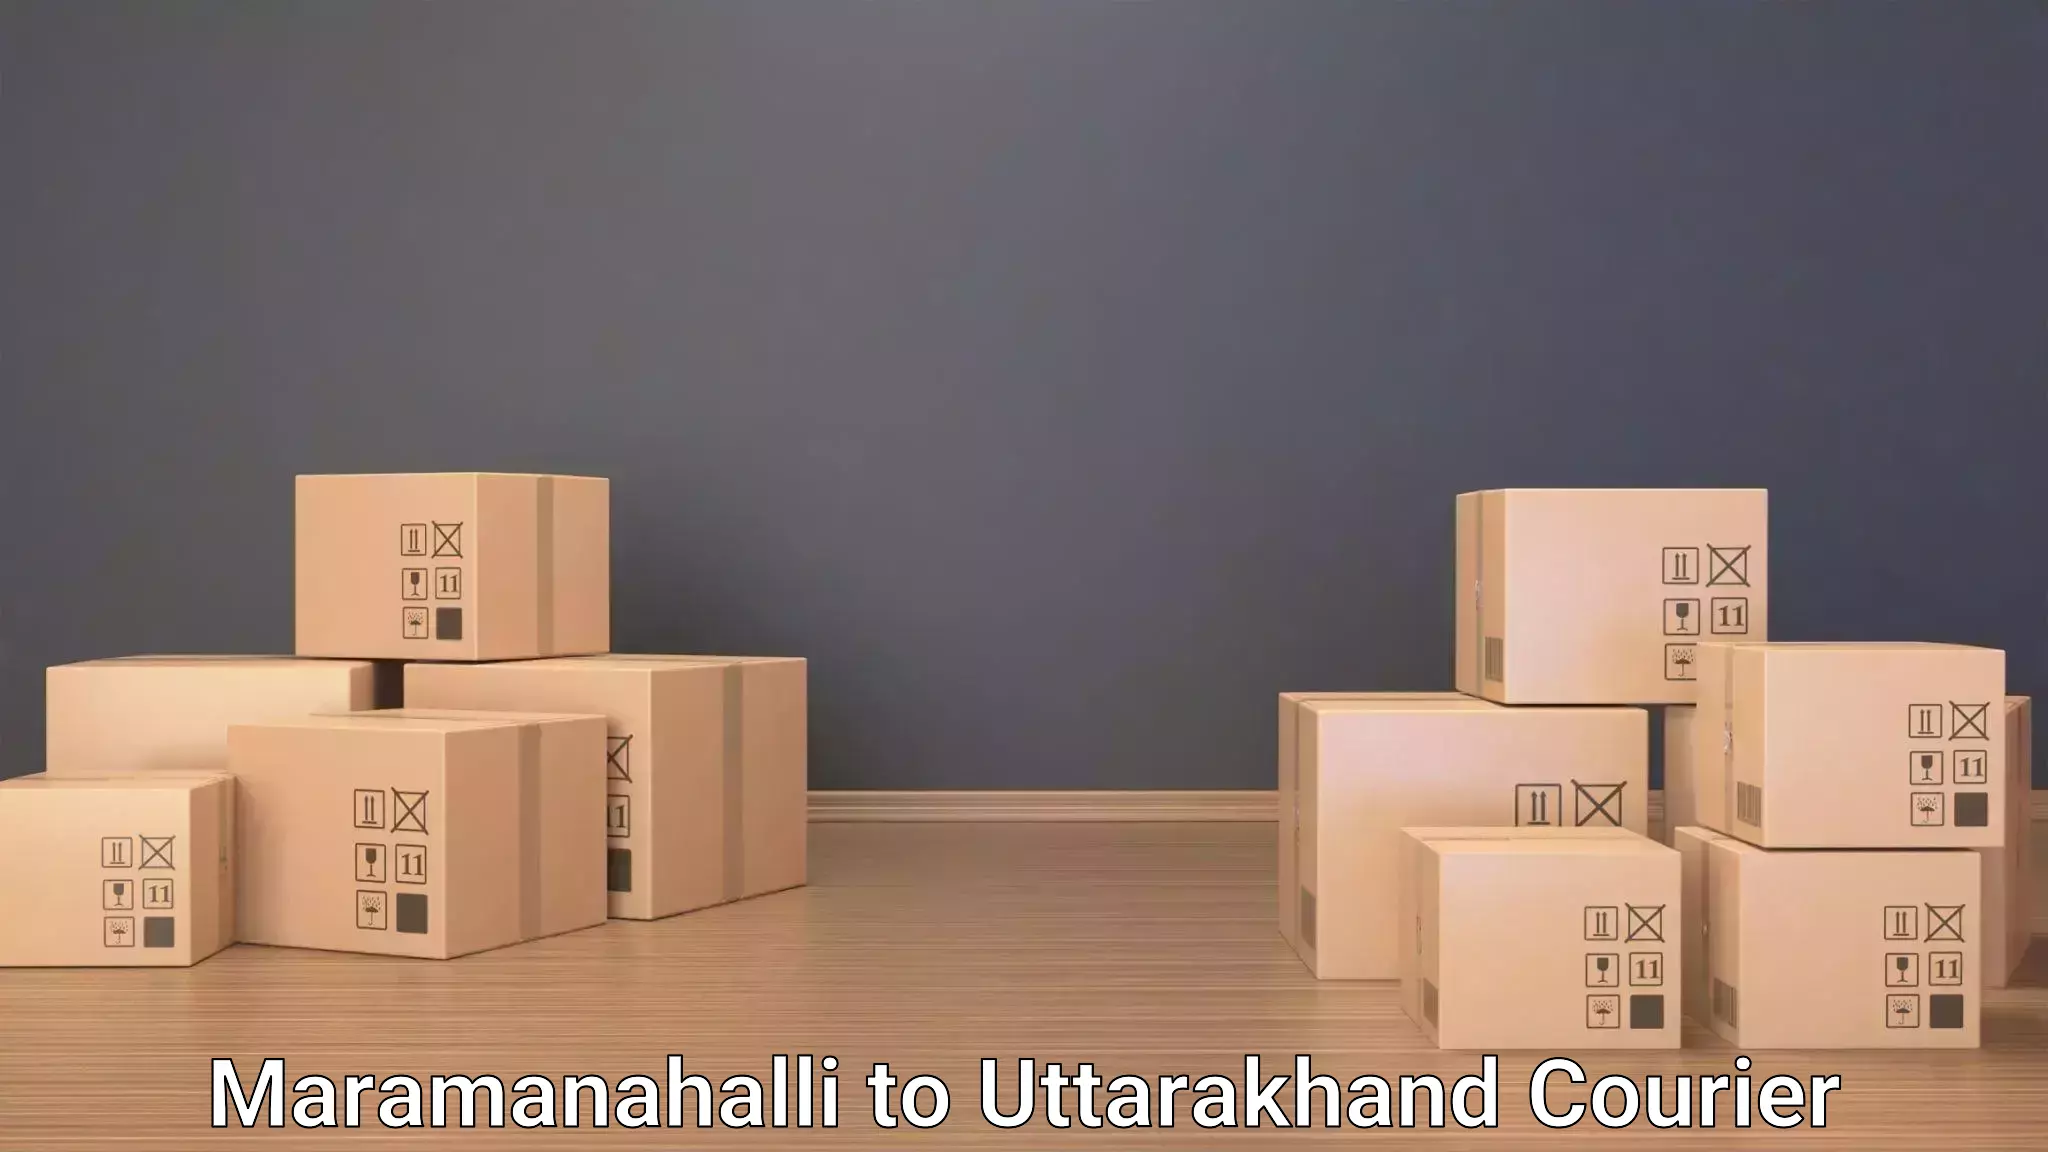 Airport luggage delivery Maramanahalli to Karnaprayag